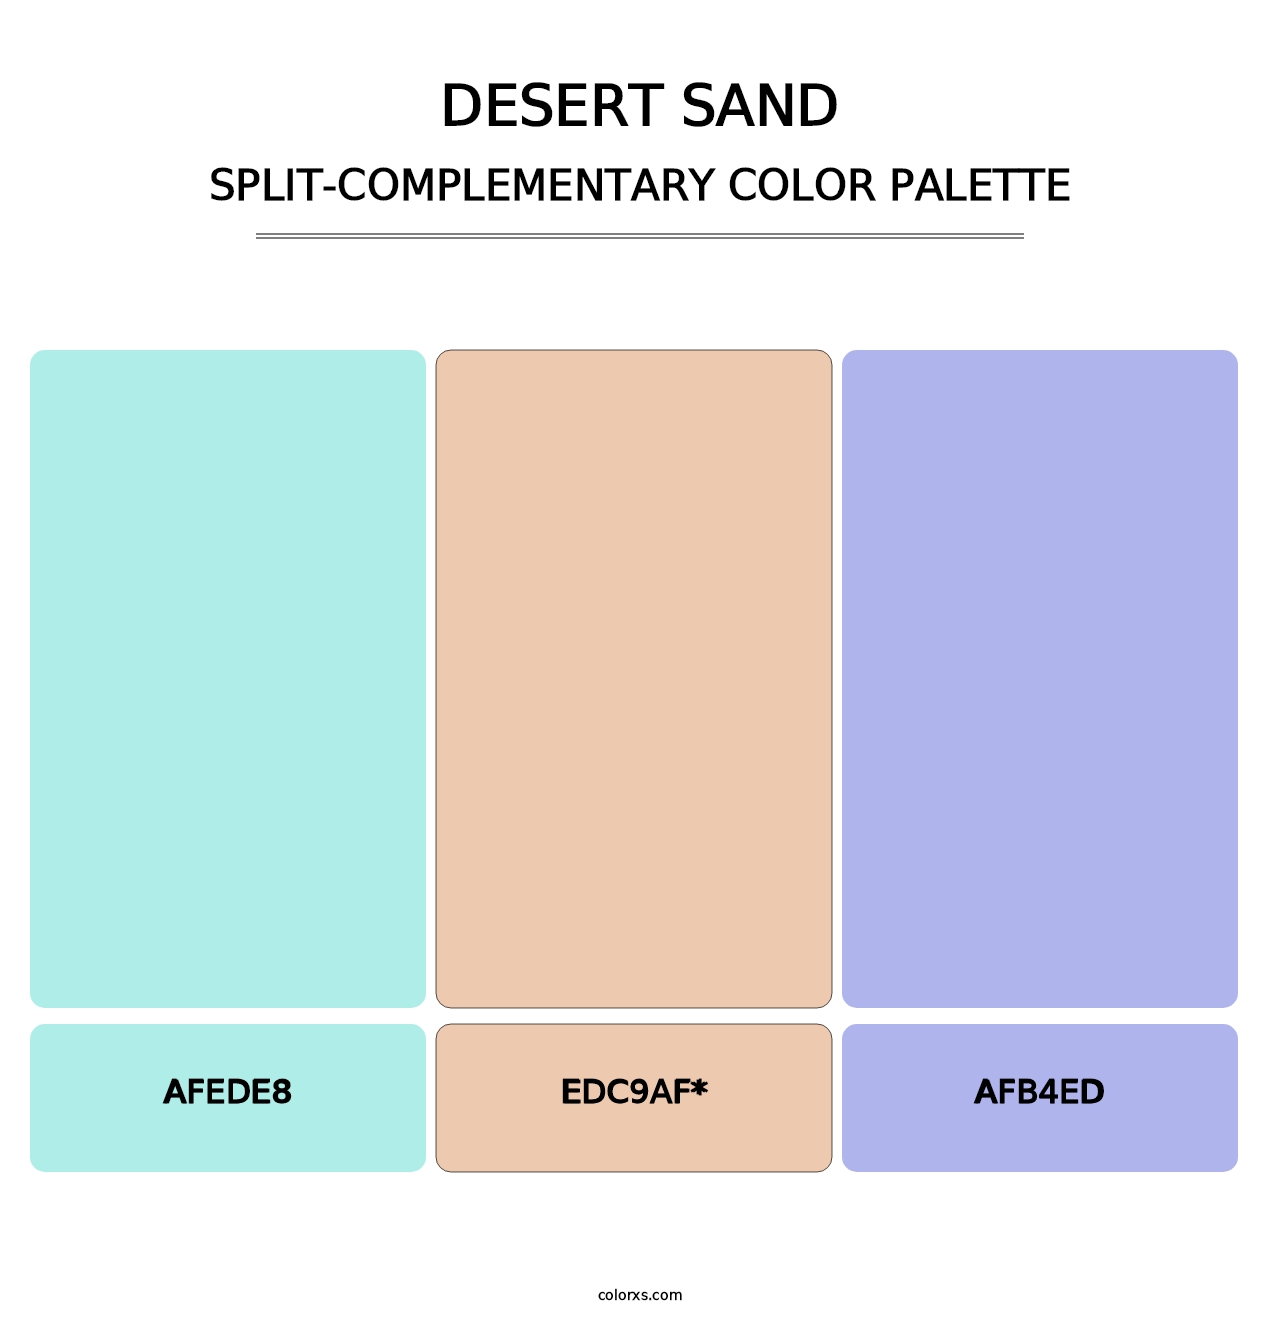 Desert Sand - Split-Complementary Color Palette